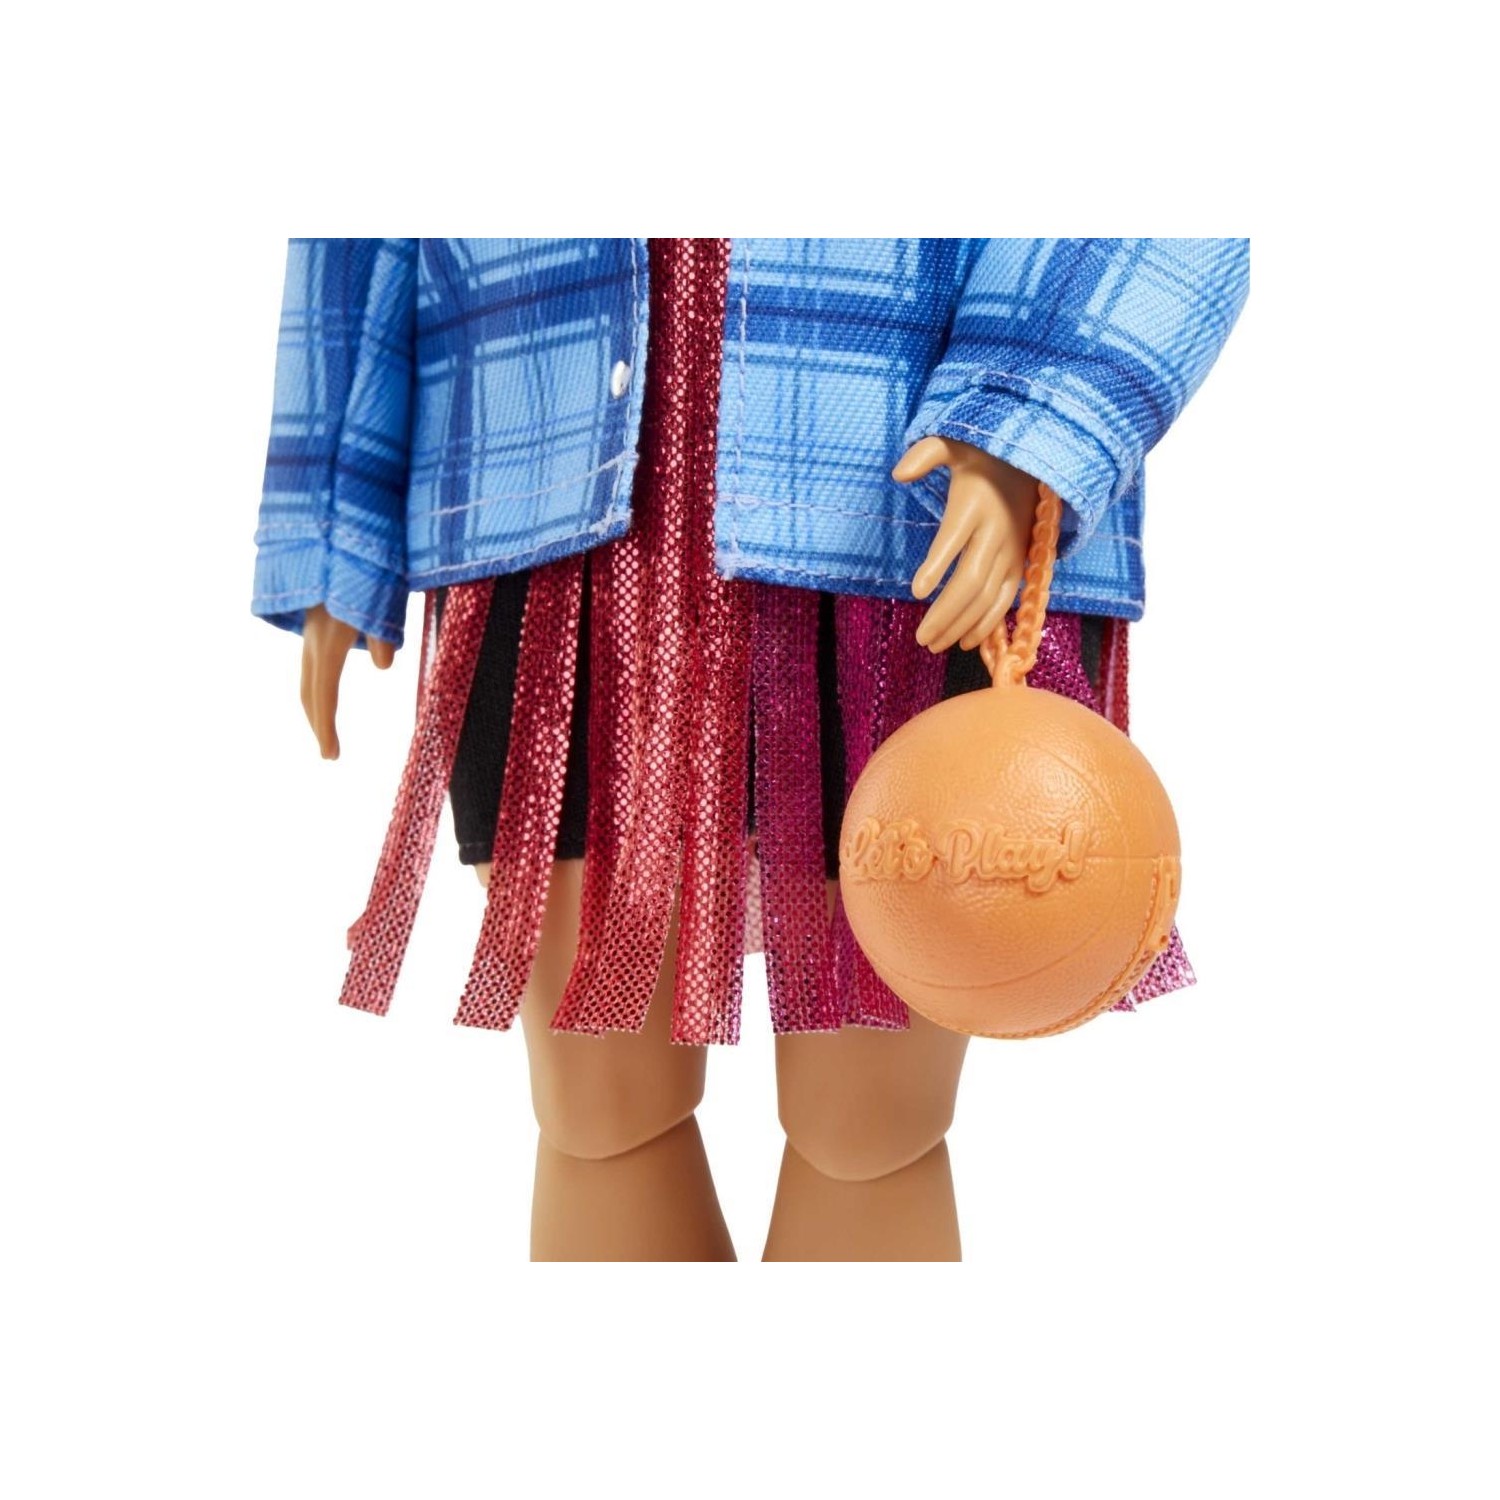 Кукла Barbie Extra Baby in Plaid Jacket, Corgi Dog HDJ46 кукла barbie в дополнительной куртке grn27